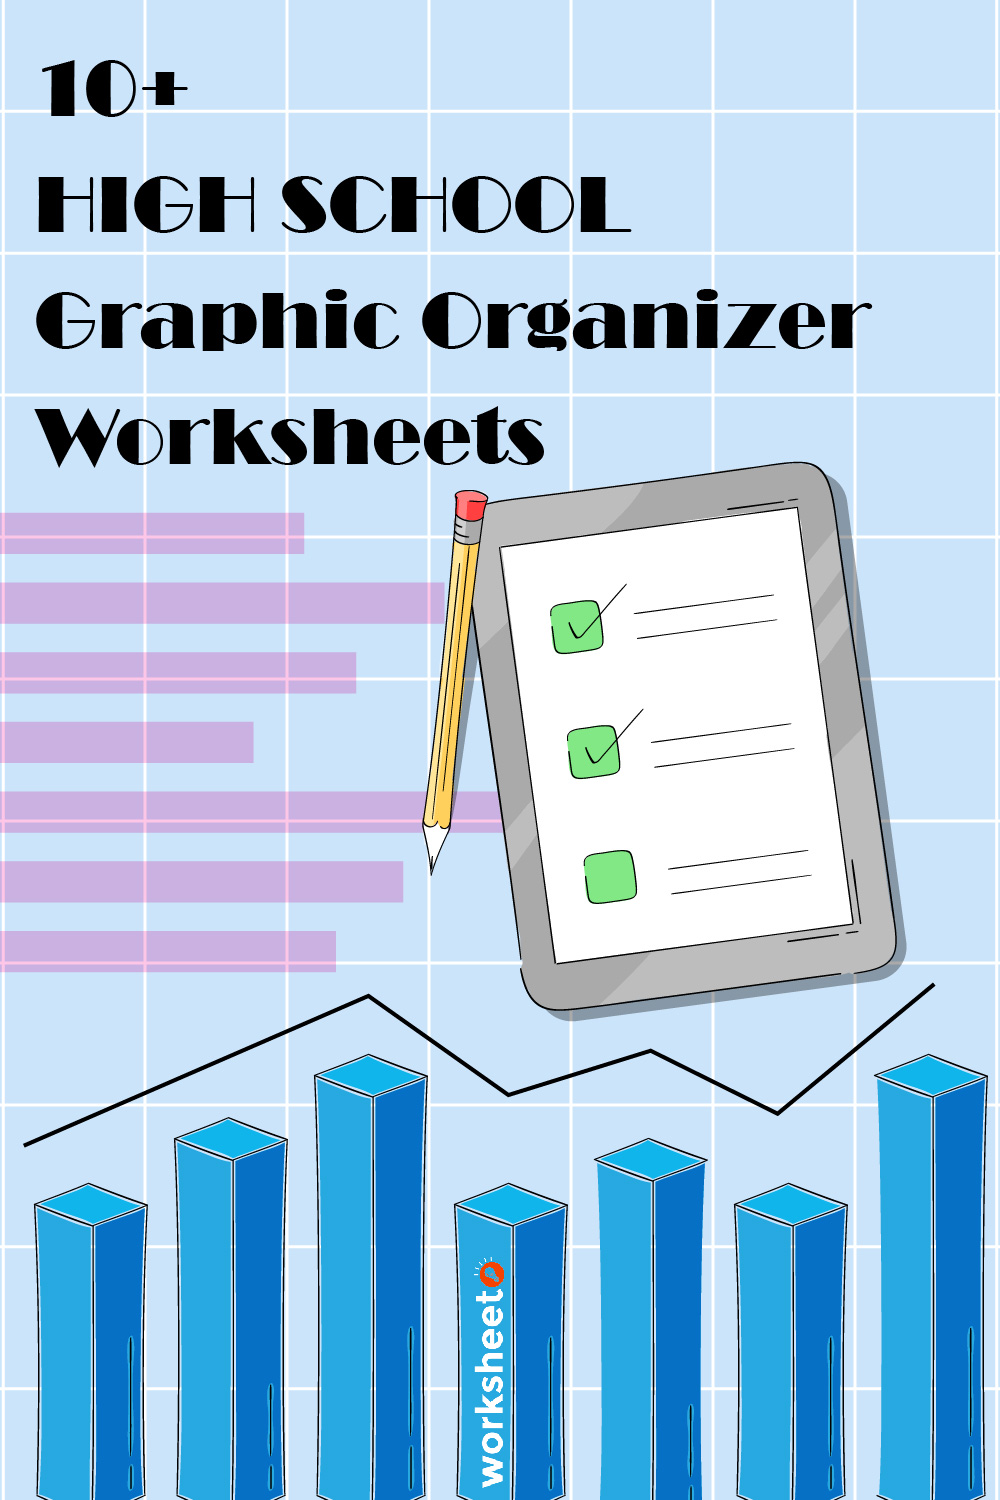 High School Graphic Organizer Worksheets